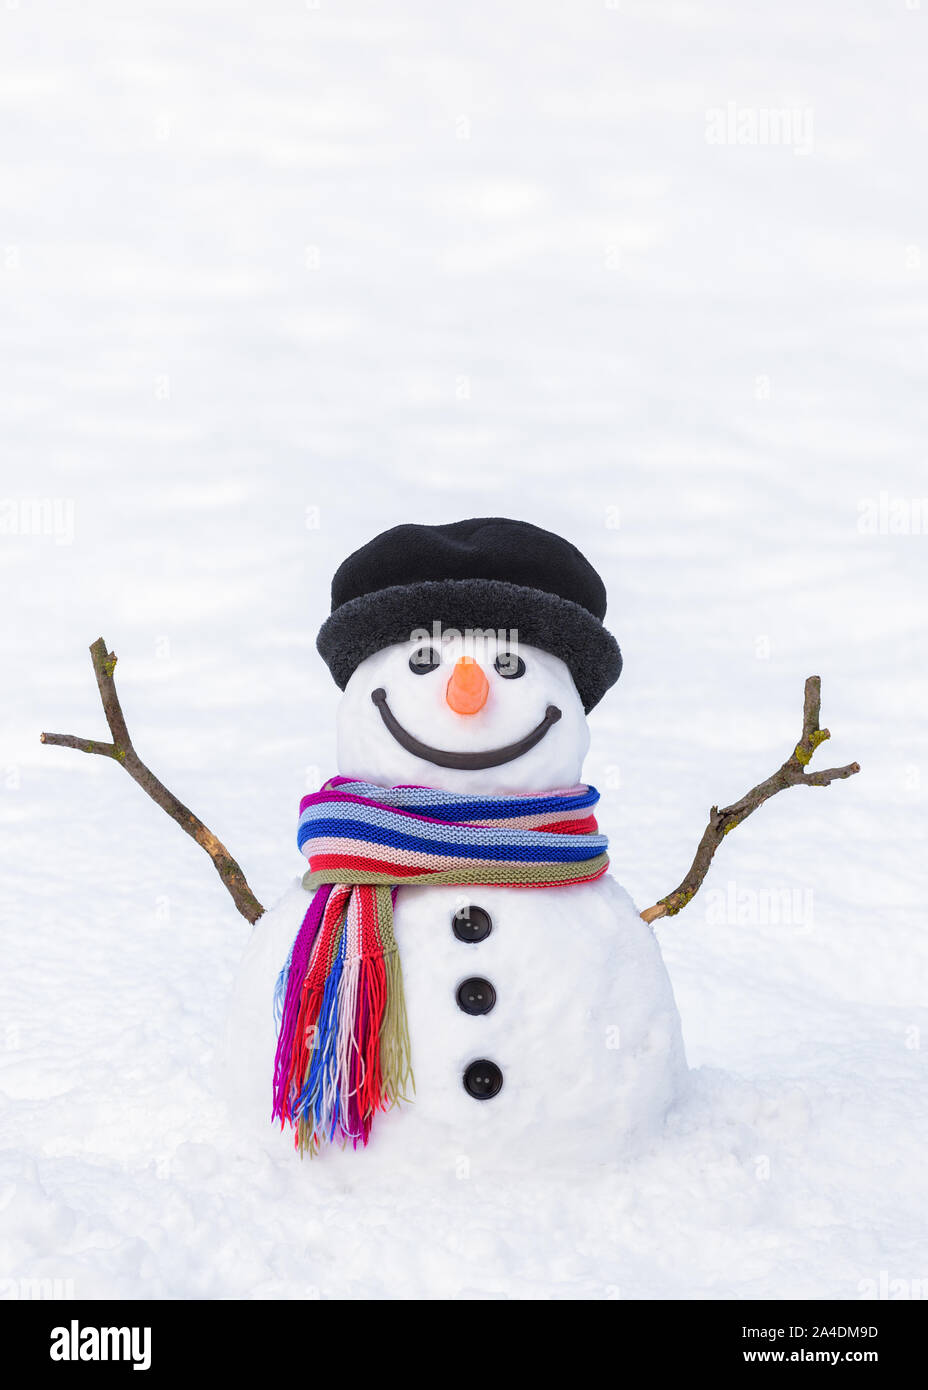 Tarjeta de invierno. Gracioso muñeco de nieve con una bufanda de rayas brillante sobre un fondo blanco de nieve Foto de stock